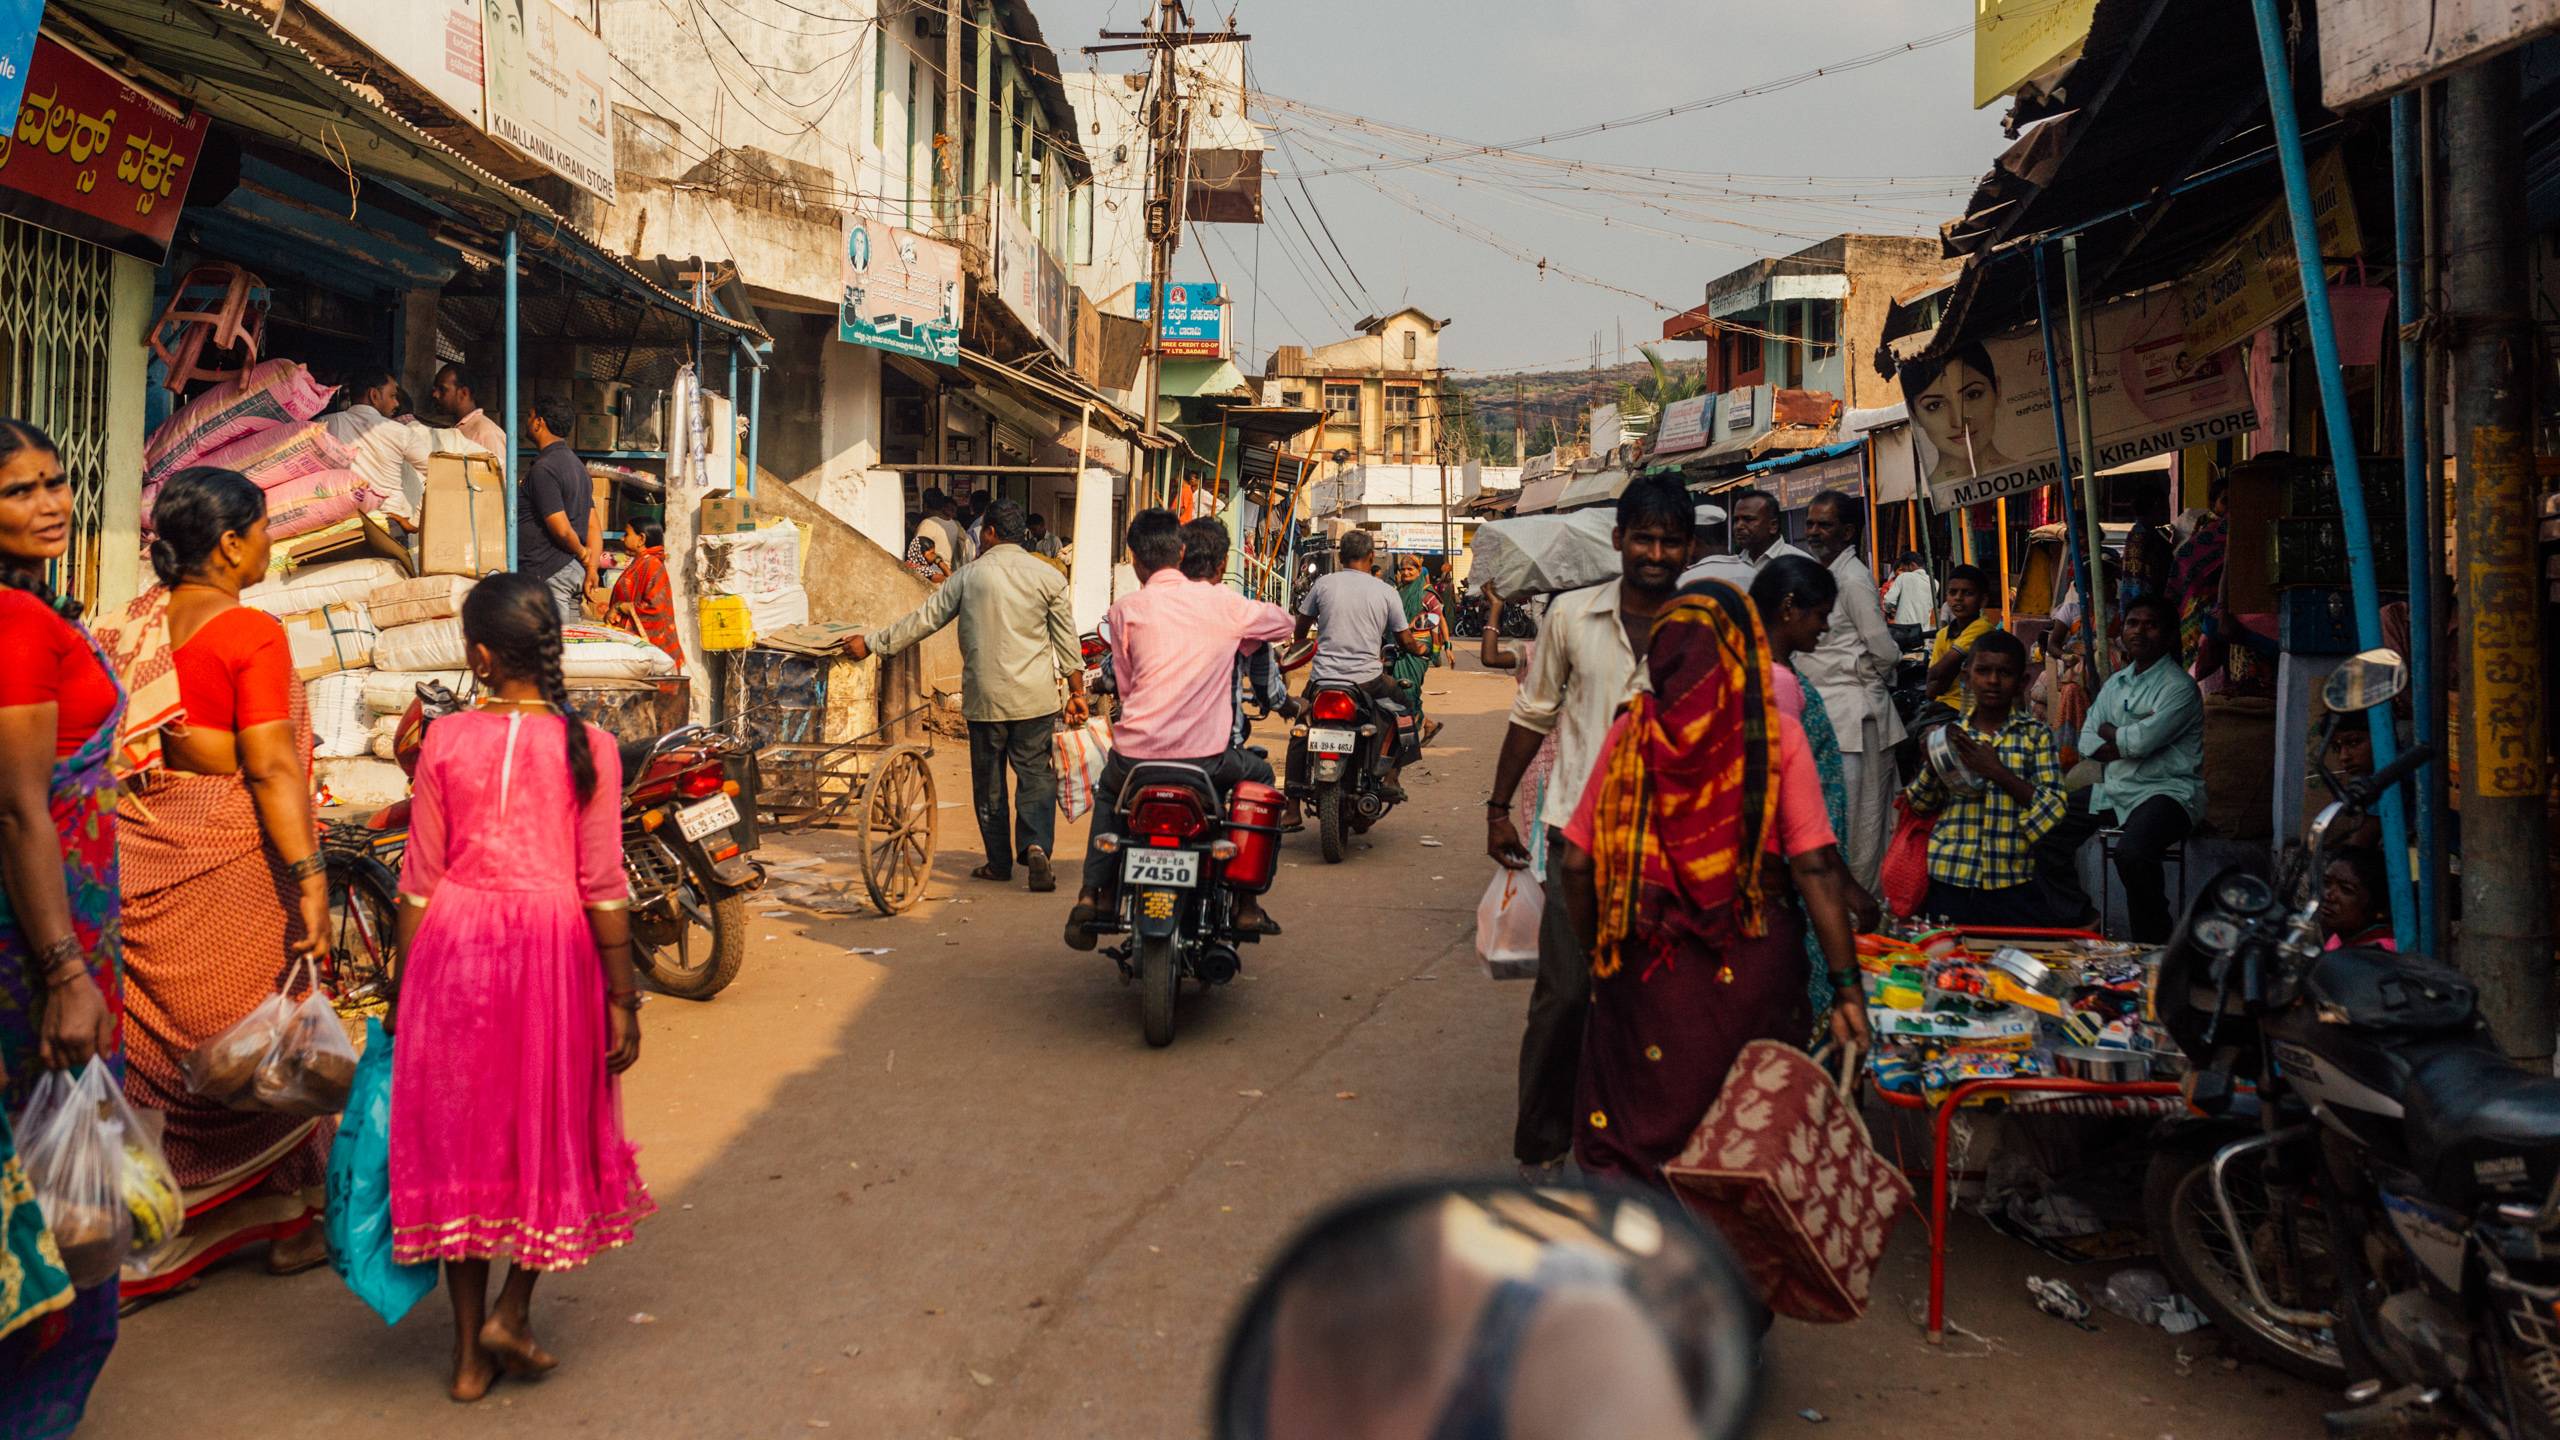 Карнатака, индия — города и районы, экскурсии, достопримечательности карнатаки от «тонкостей туризма»